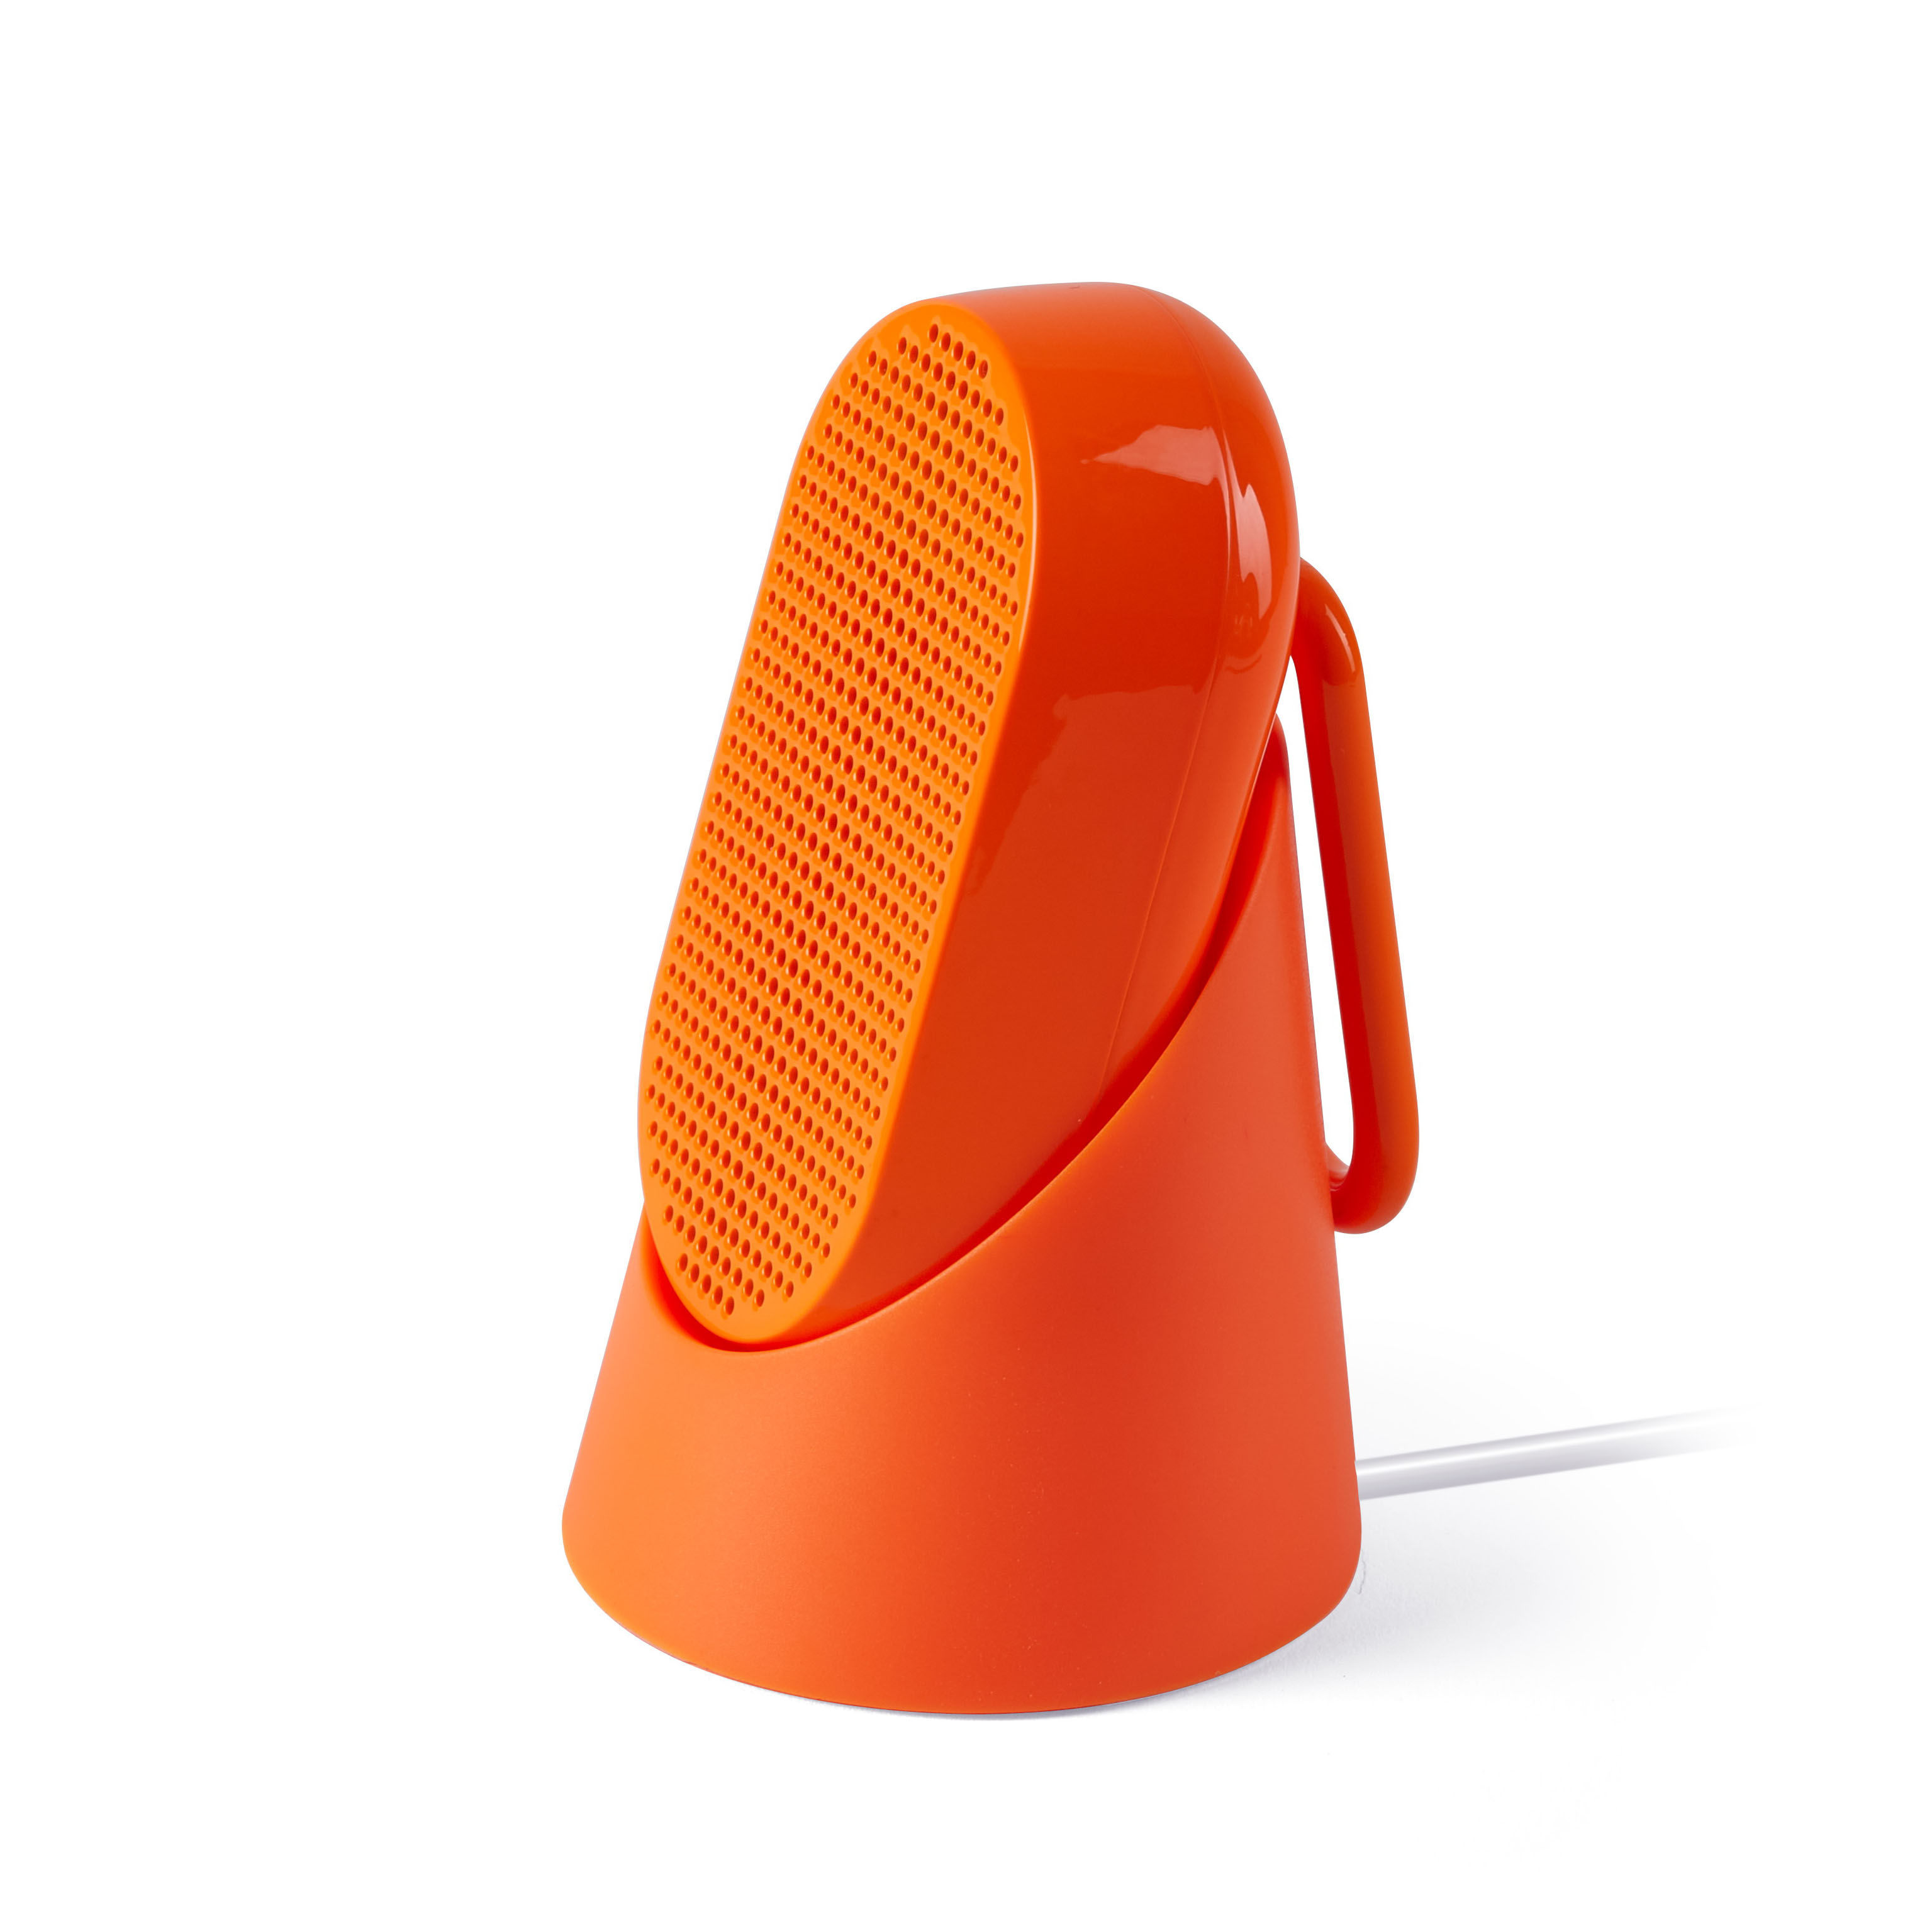 Enceinte Bluetooth Mino T - 5W / Etanche - Mousqueton intégré / Station d'accueil - Lexon orange en matière plastique